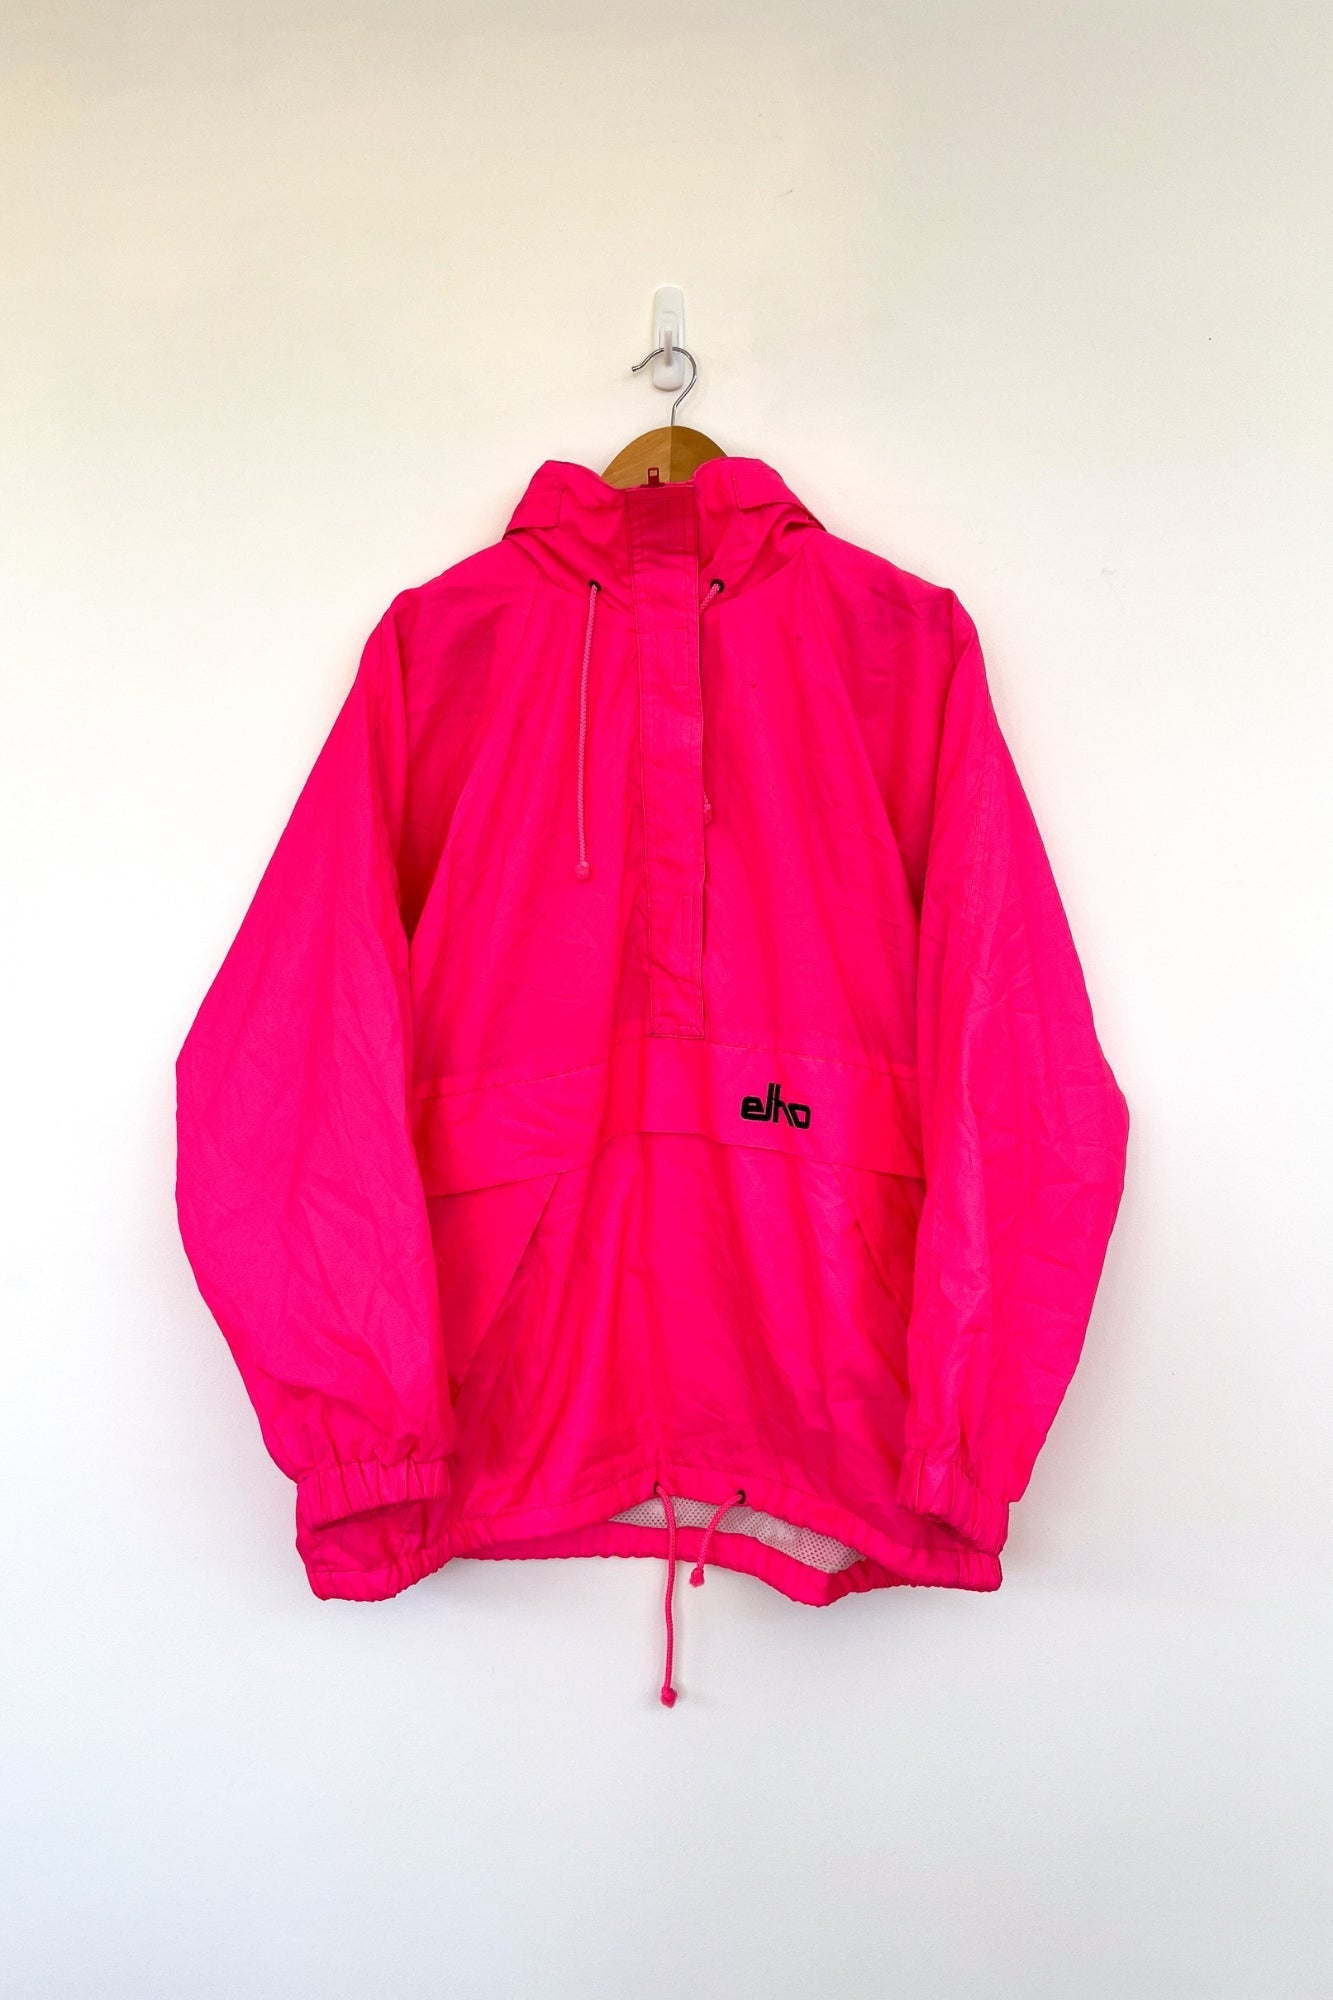 Elho Fluro Pink Vintage Ski Jacket